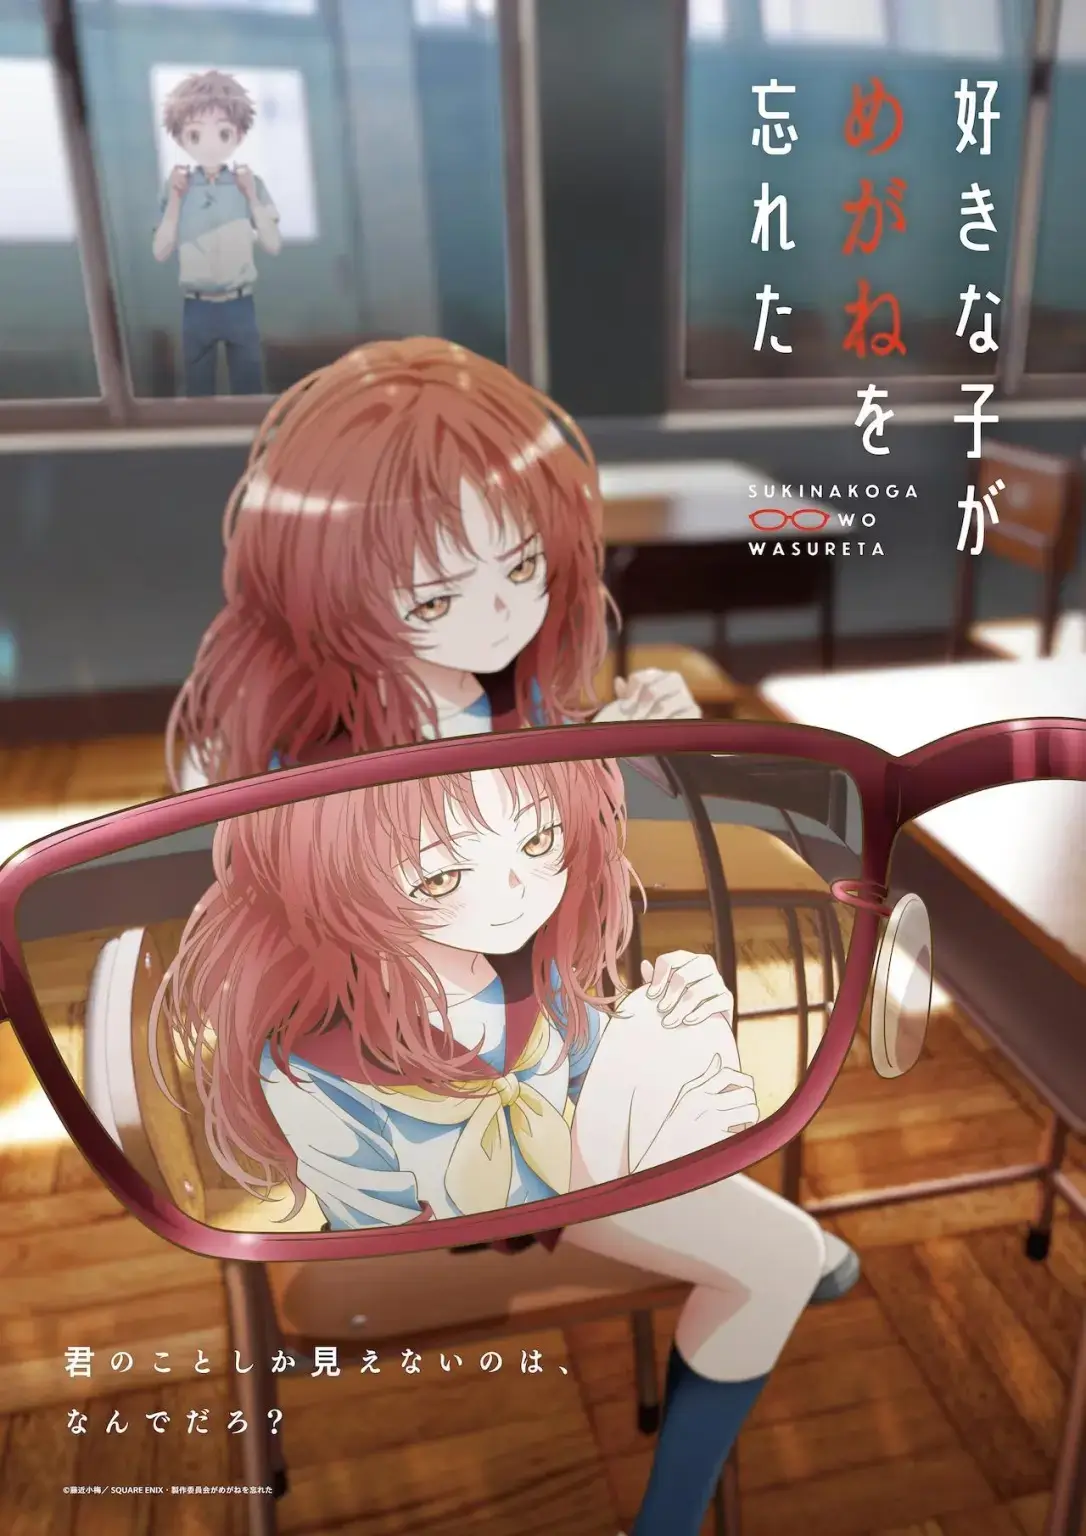 Trailer Pertama, Anime Suki na Ko ga Megane wo Wasureta Ungkap Pengisi Suara dan Staf Produksi